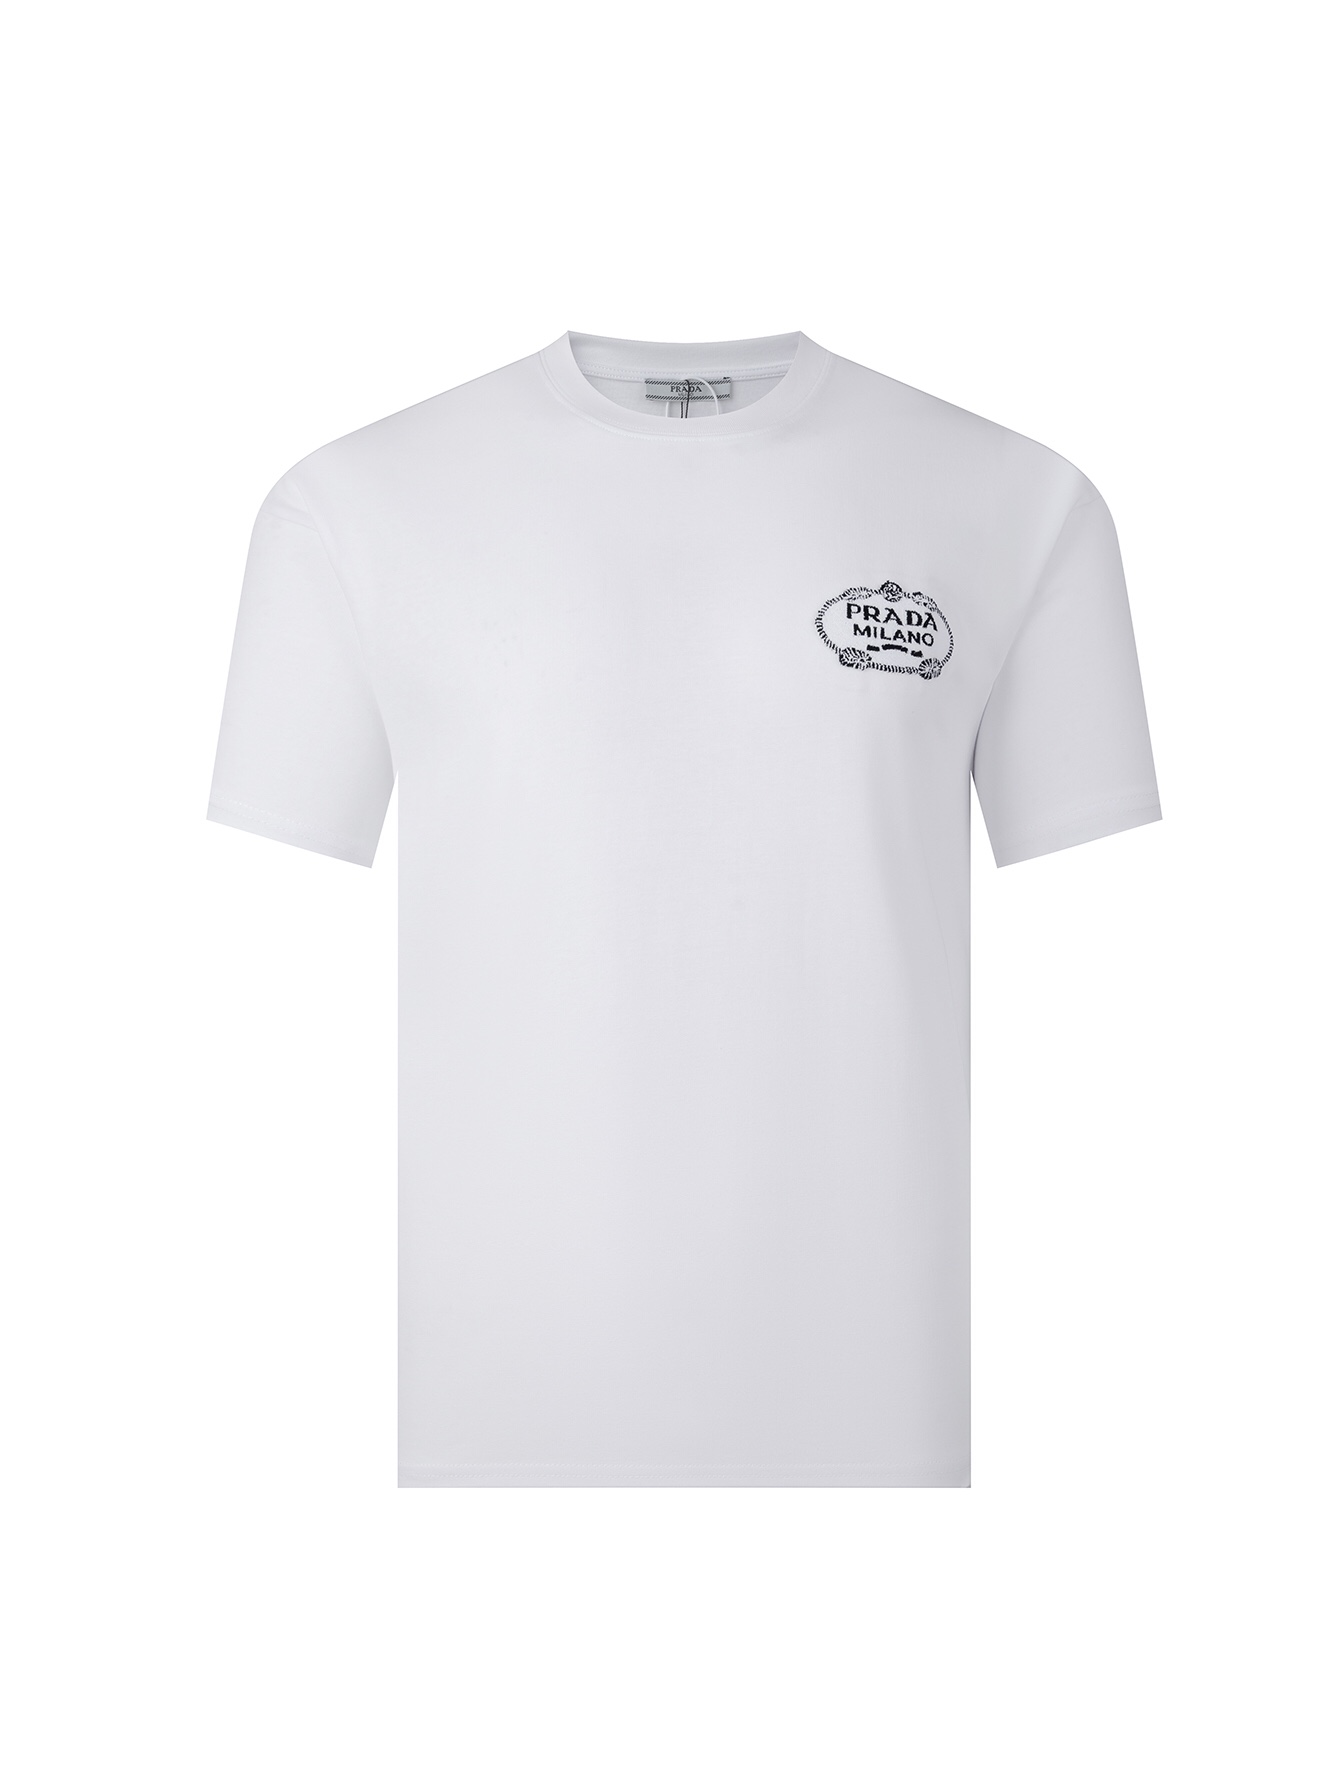 Prada Clothing T-Shirt Black White Unisex Short Sleeve